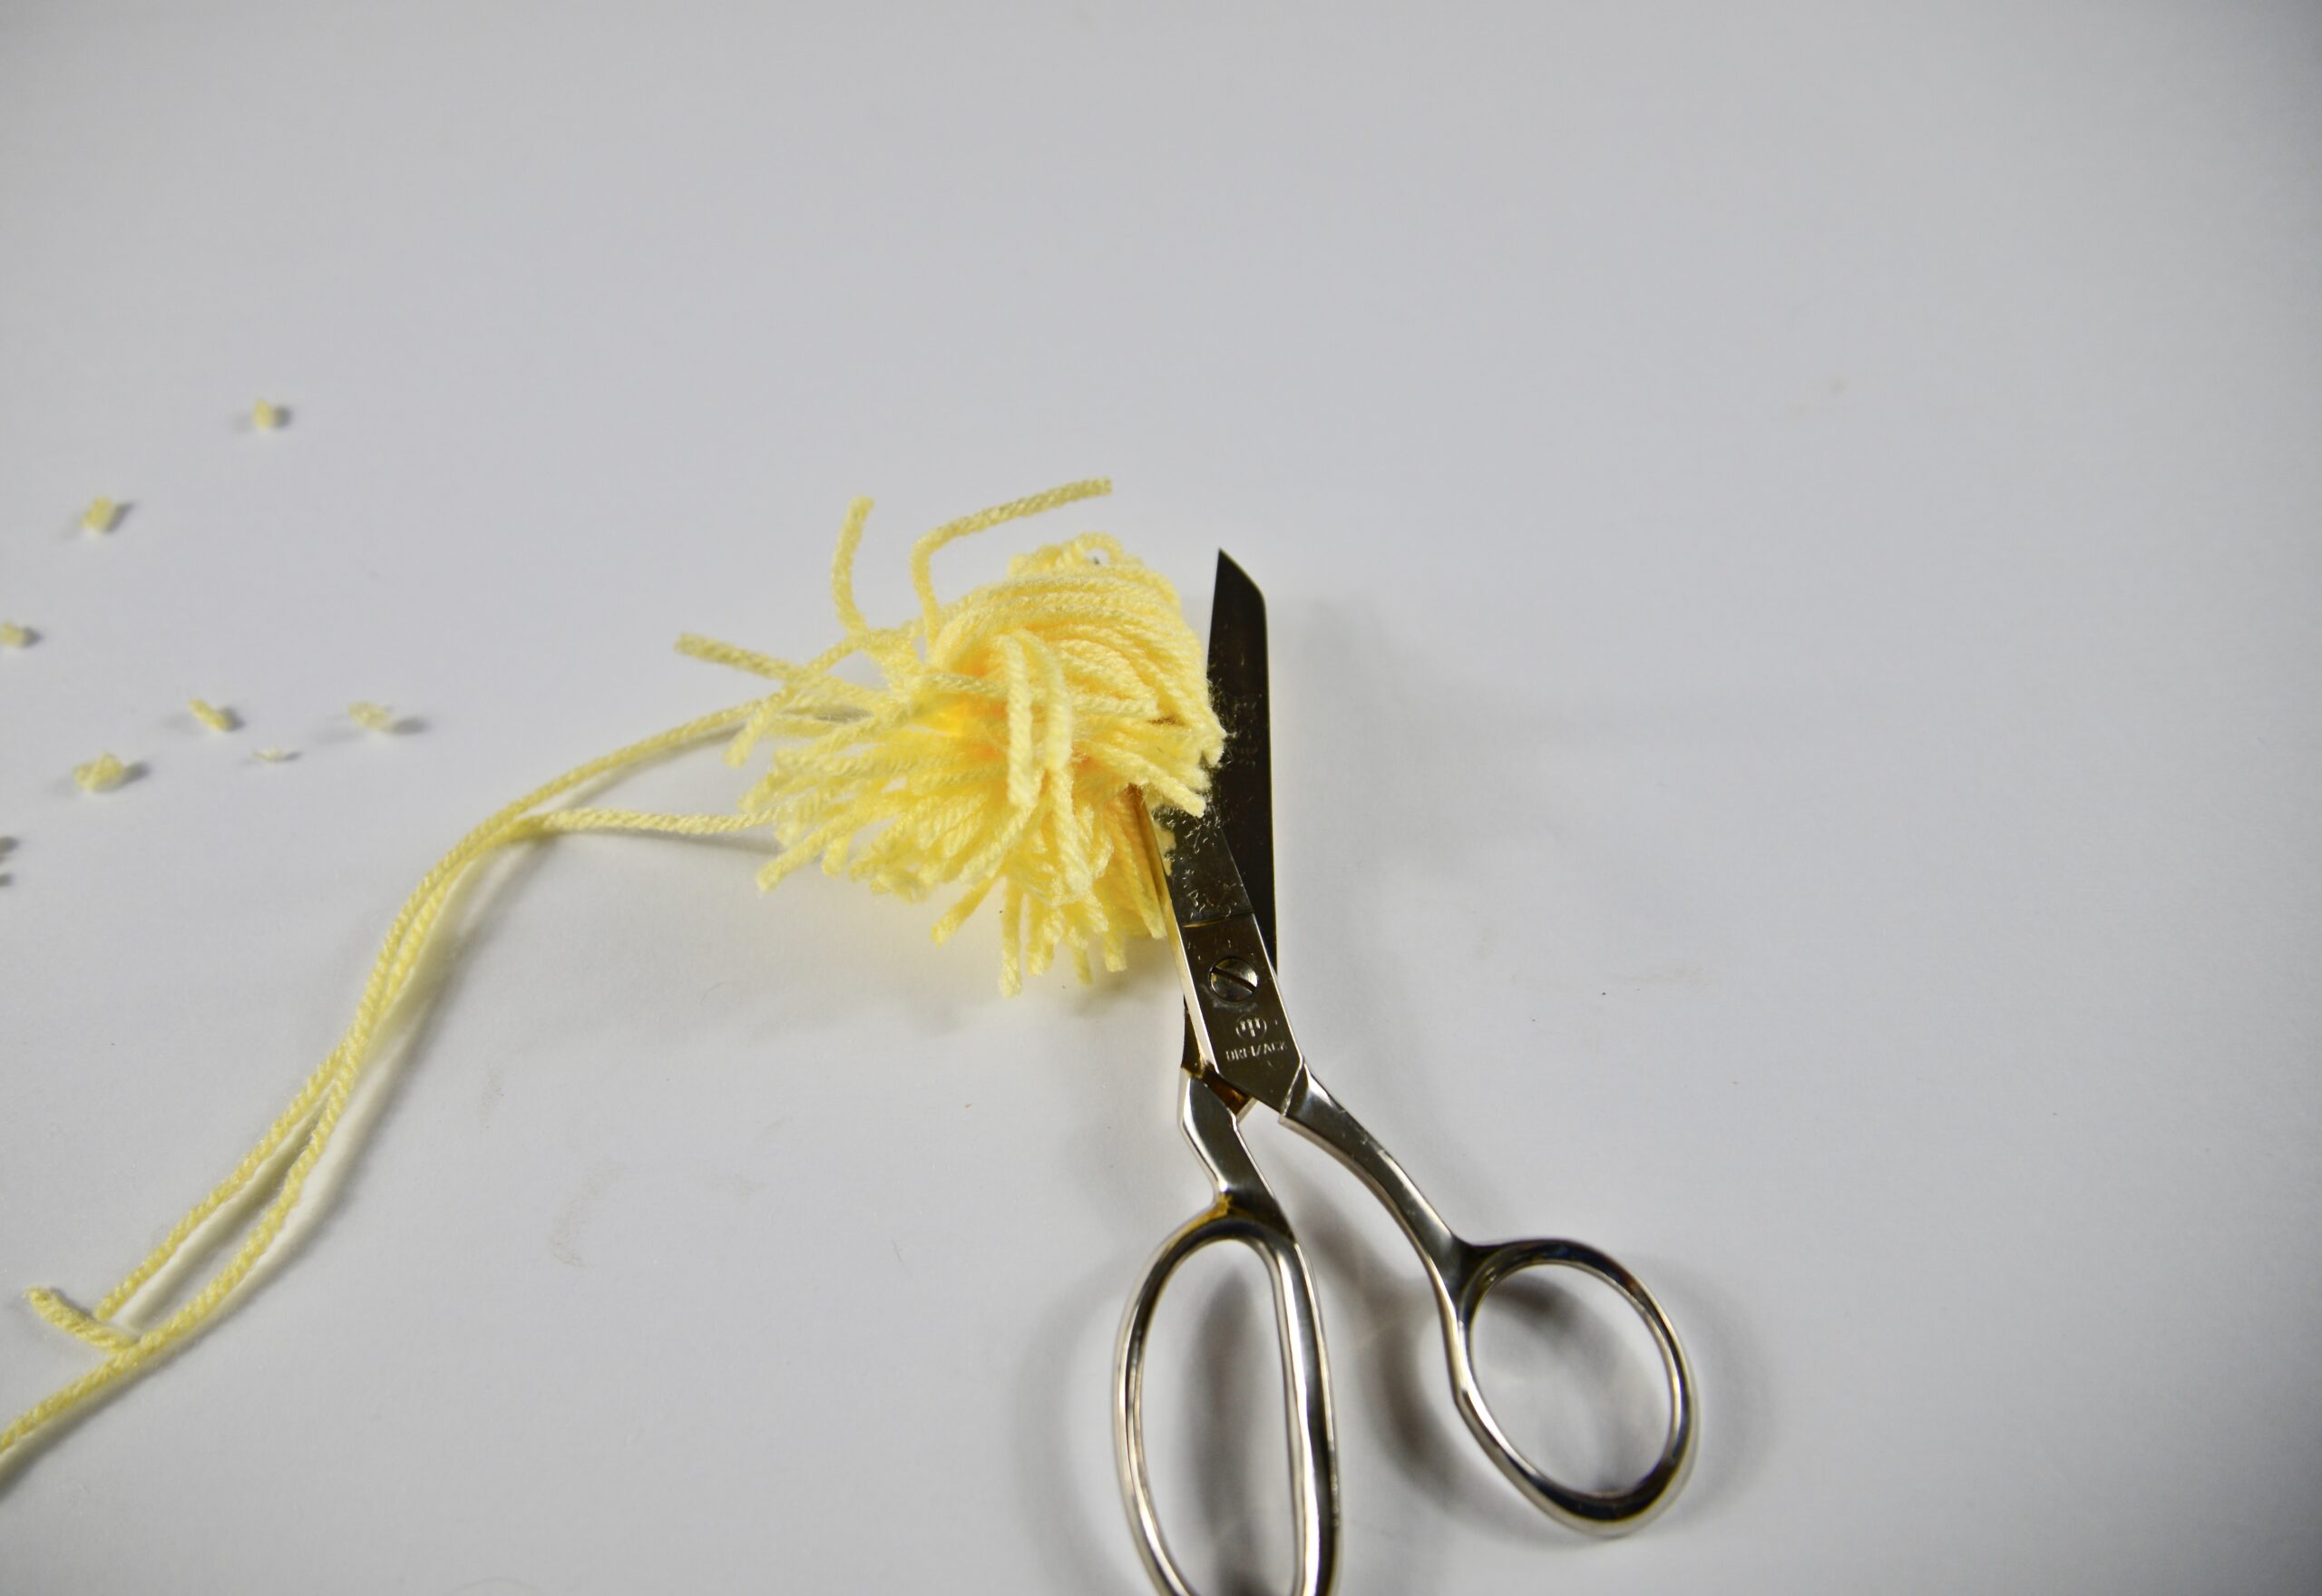 a yellow pom pom and scissors